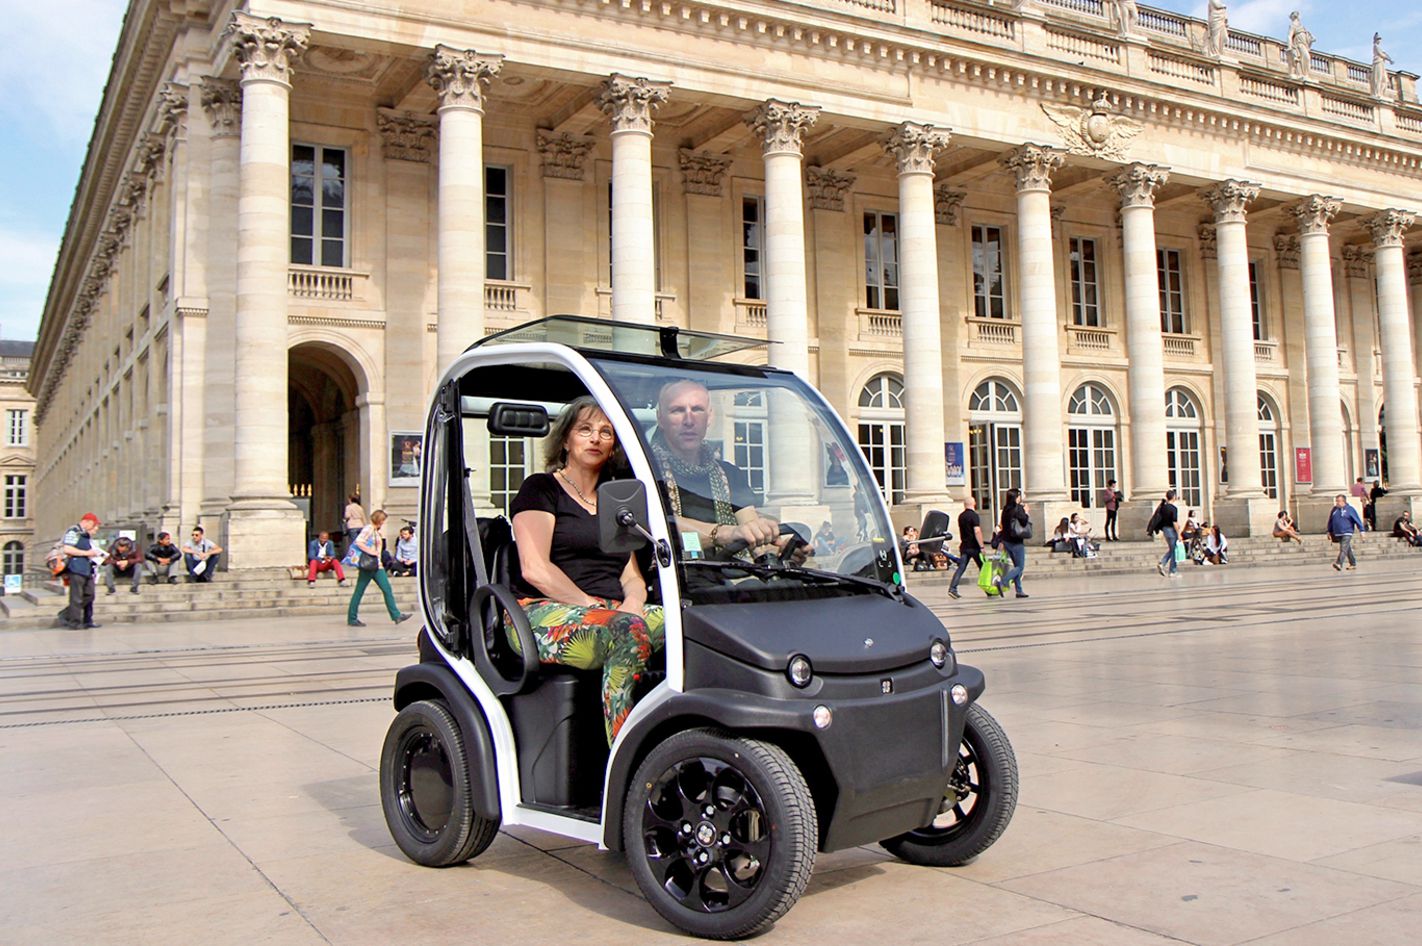 E-Mobil Stadtrundfahrt durch Bordeaux für 2